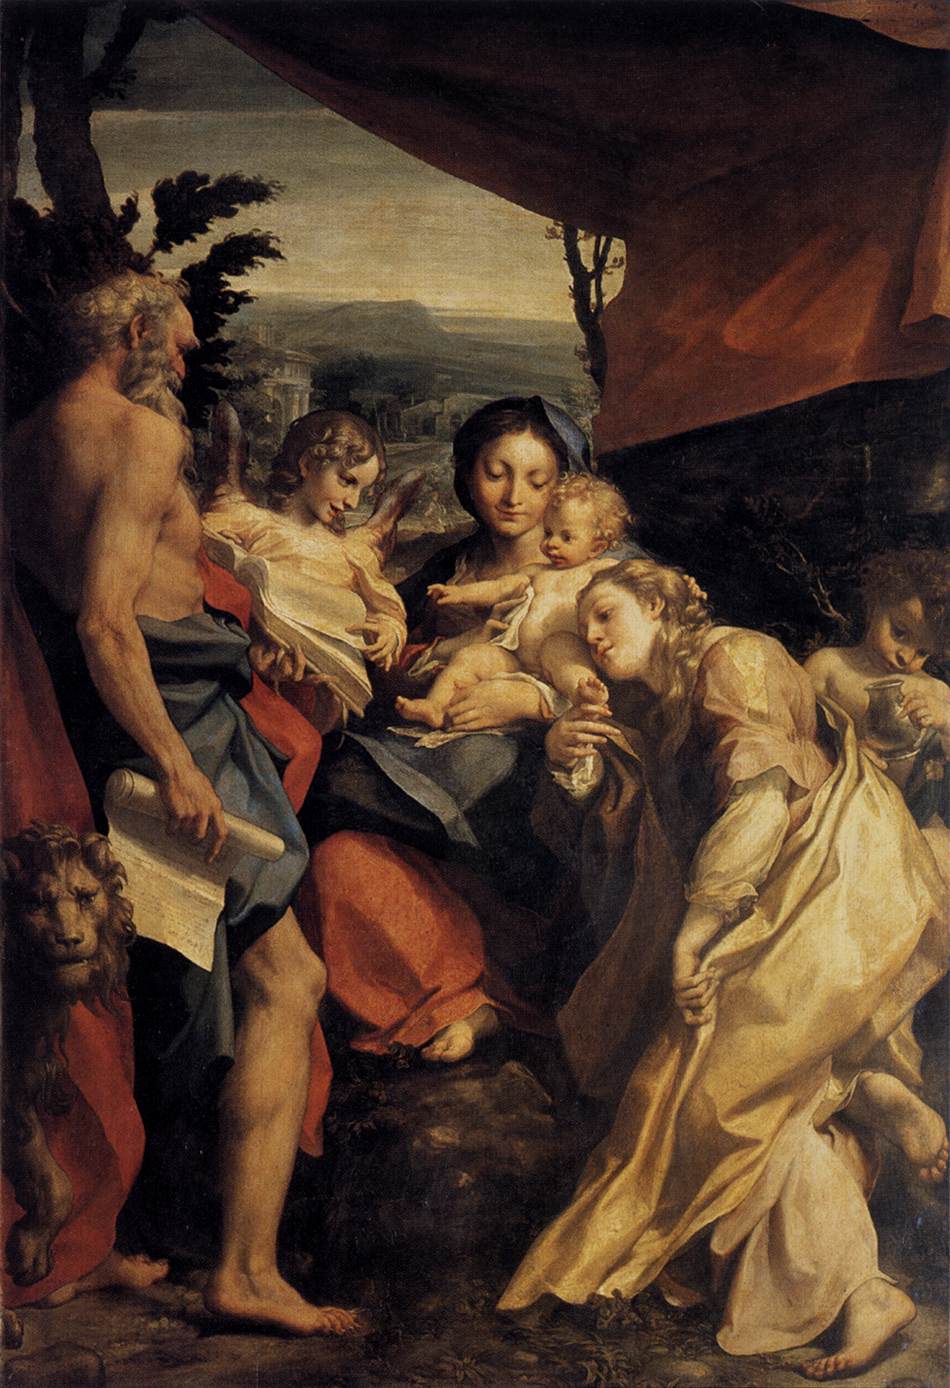 La Vierge et l'enfant avec San Jerónimo et María Magdalena (le jour)